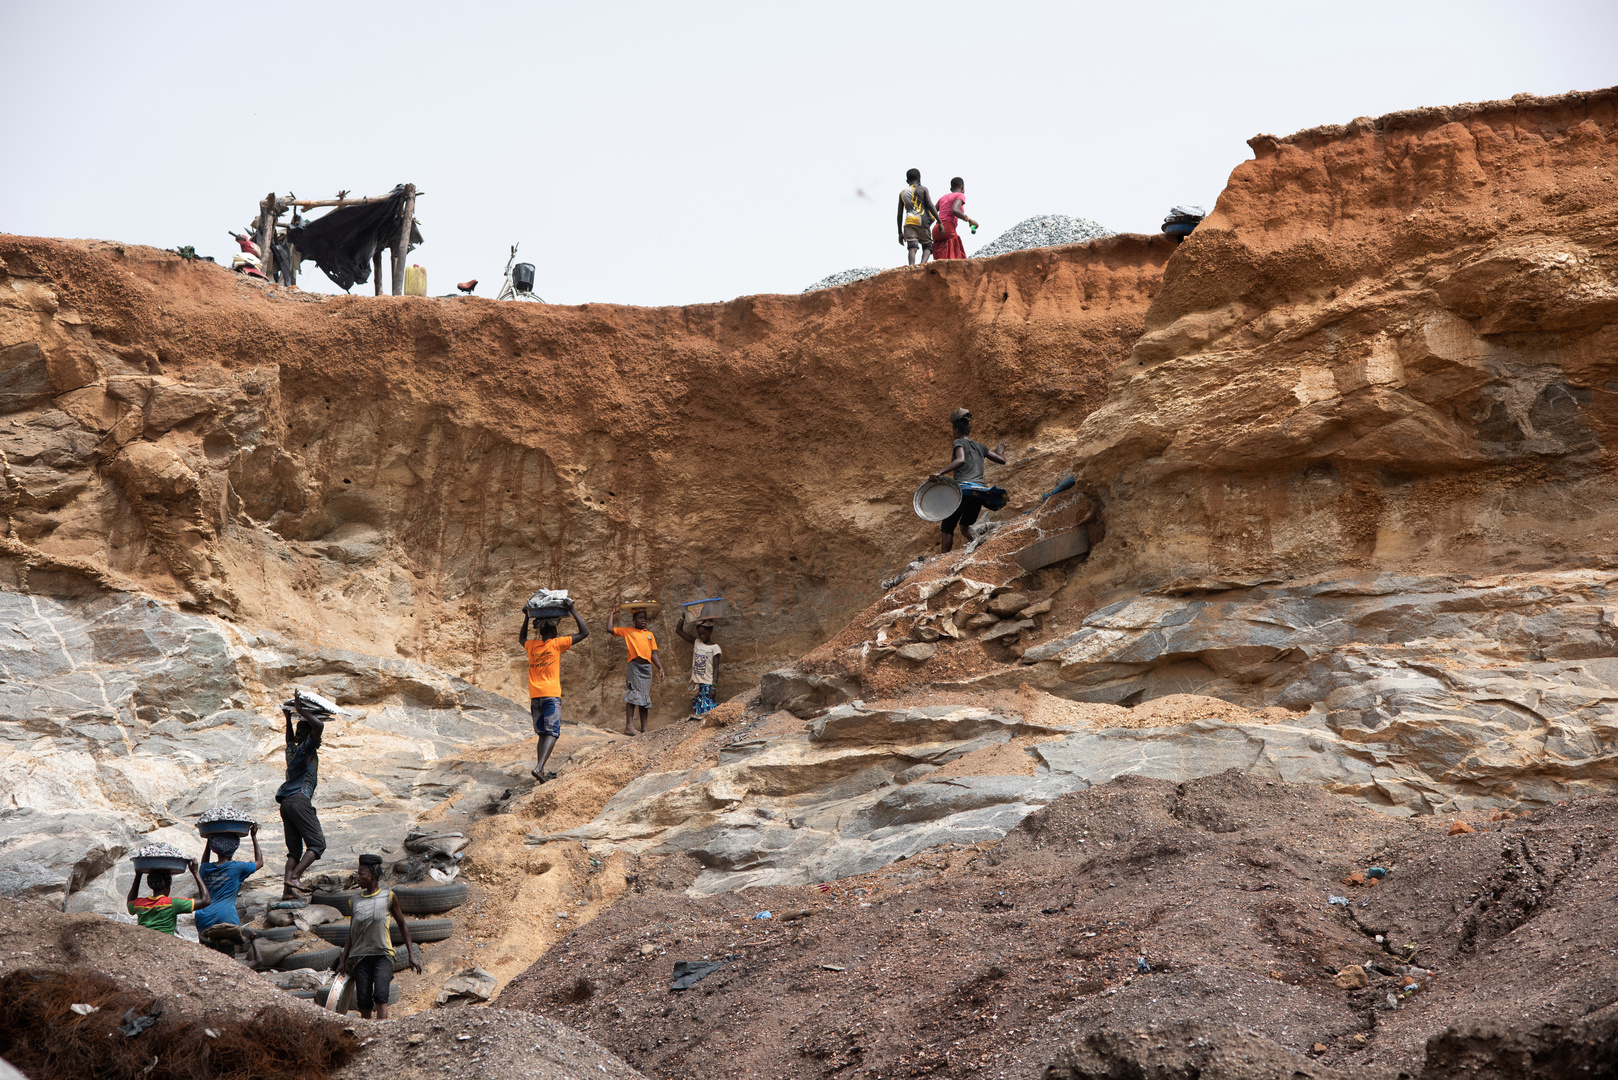 العثور على عشرات الجثث في بوركينا فاسو